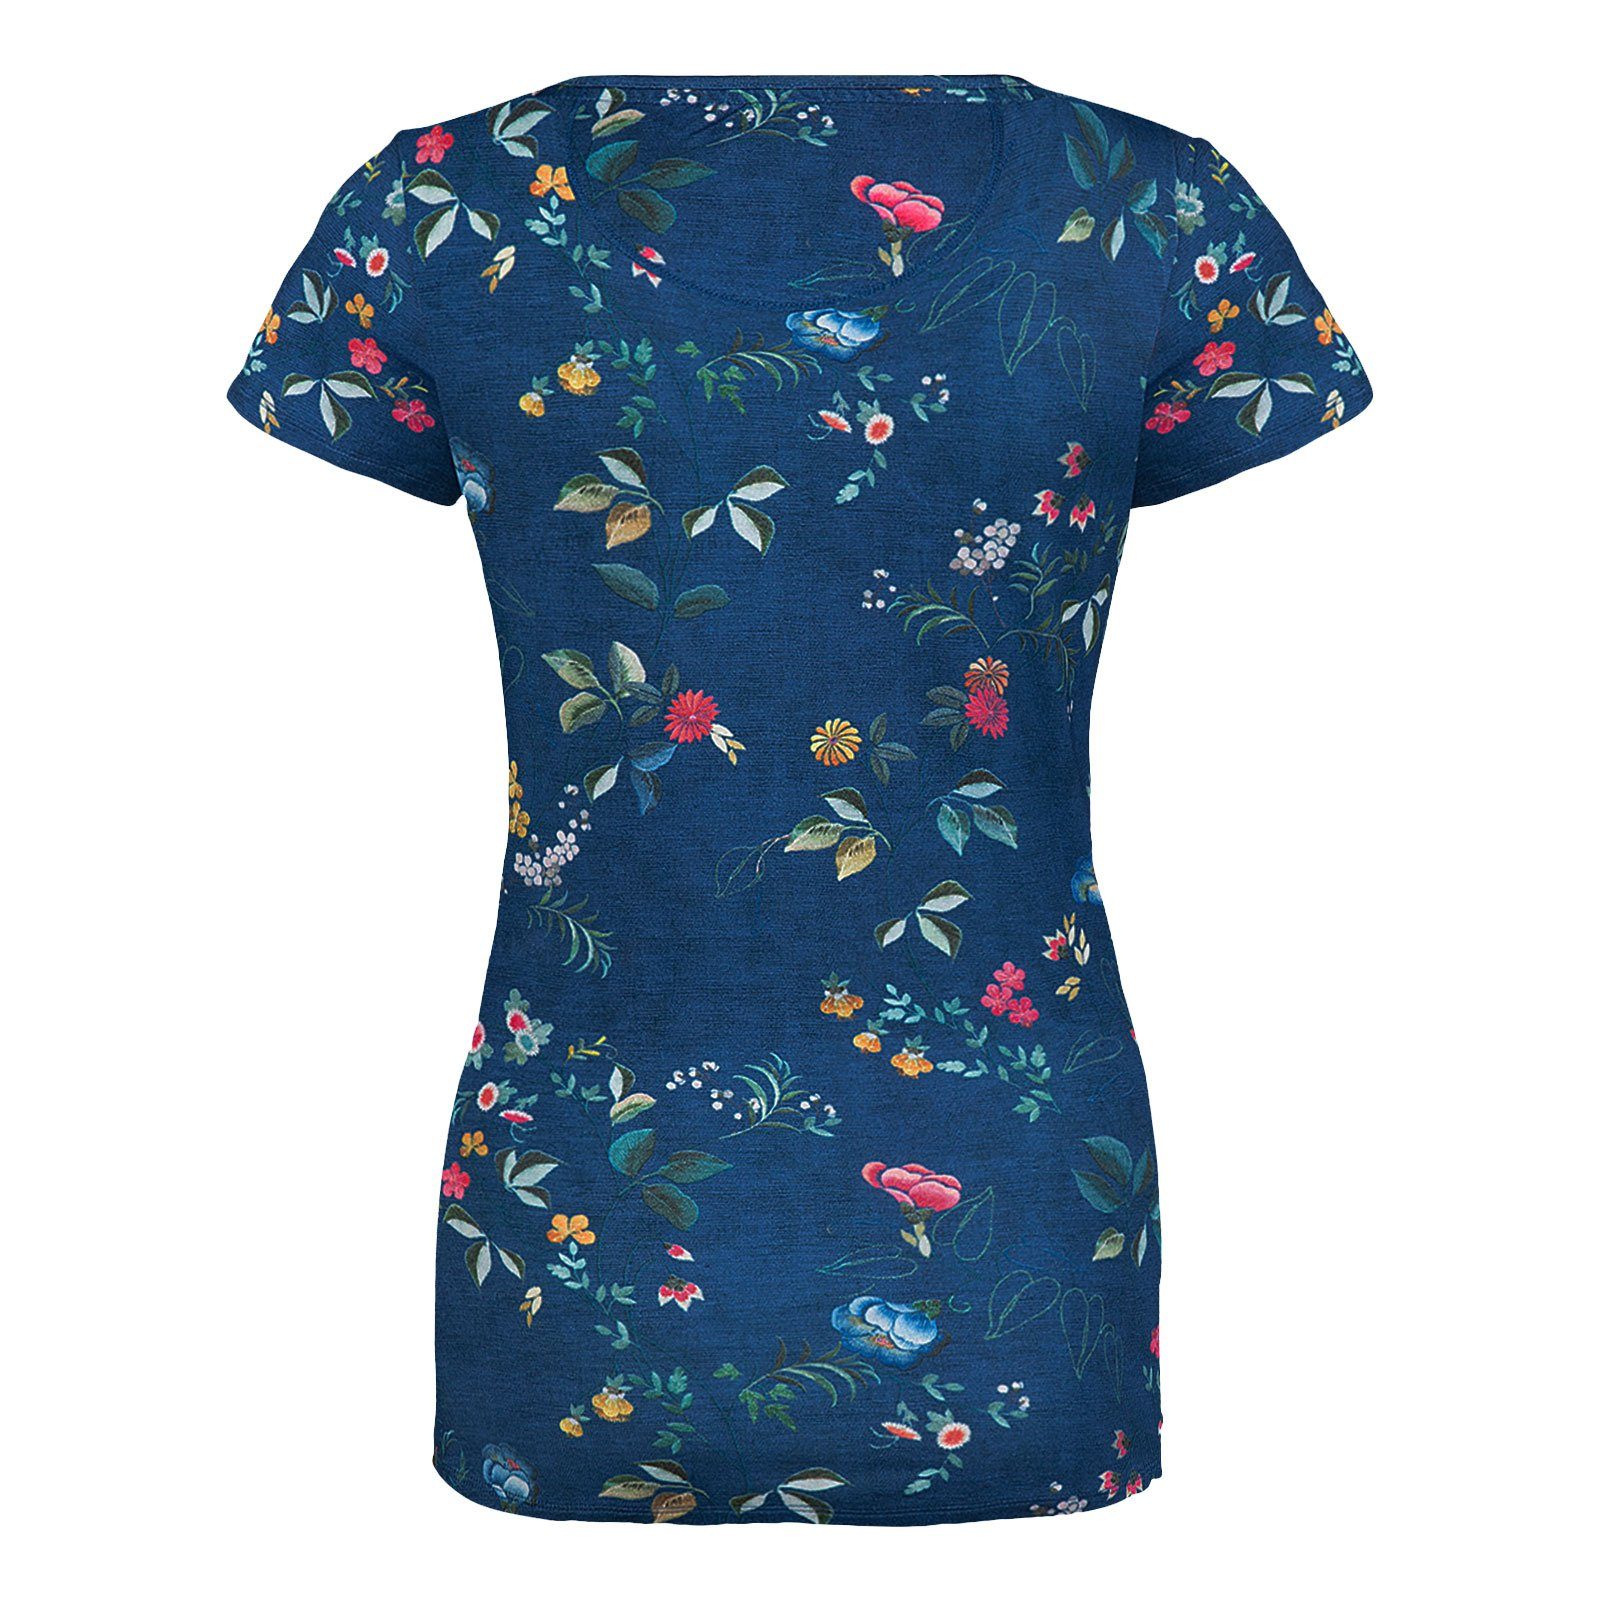 PiP Studio T-Shirt Viskosemischung tokyo aus Tokyo blue Tilly Short Sleeve dark Blossom blossom geschmeidiger